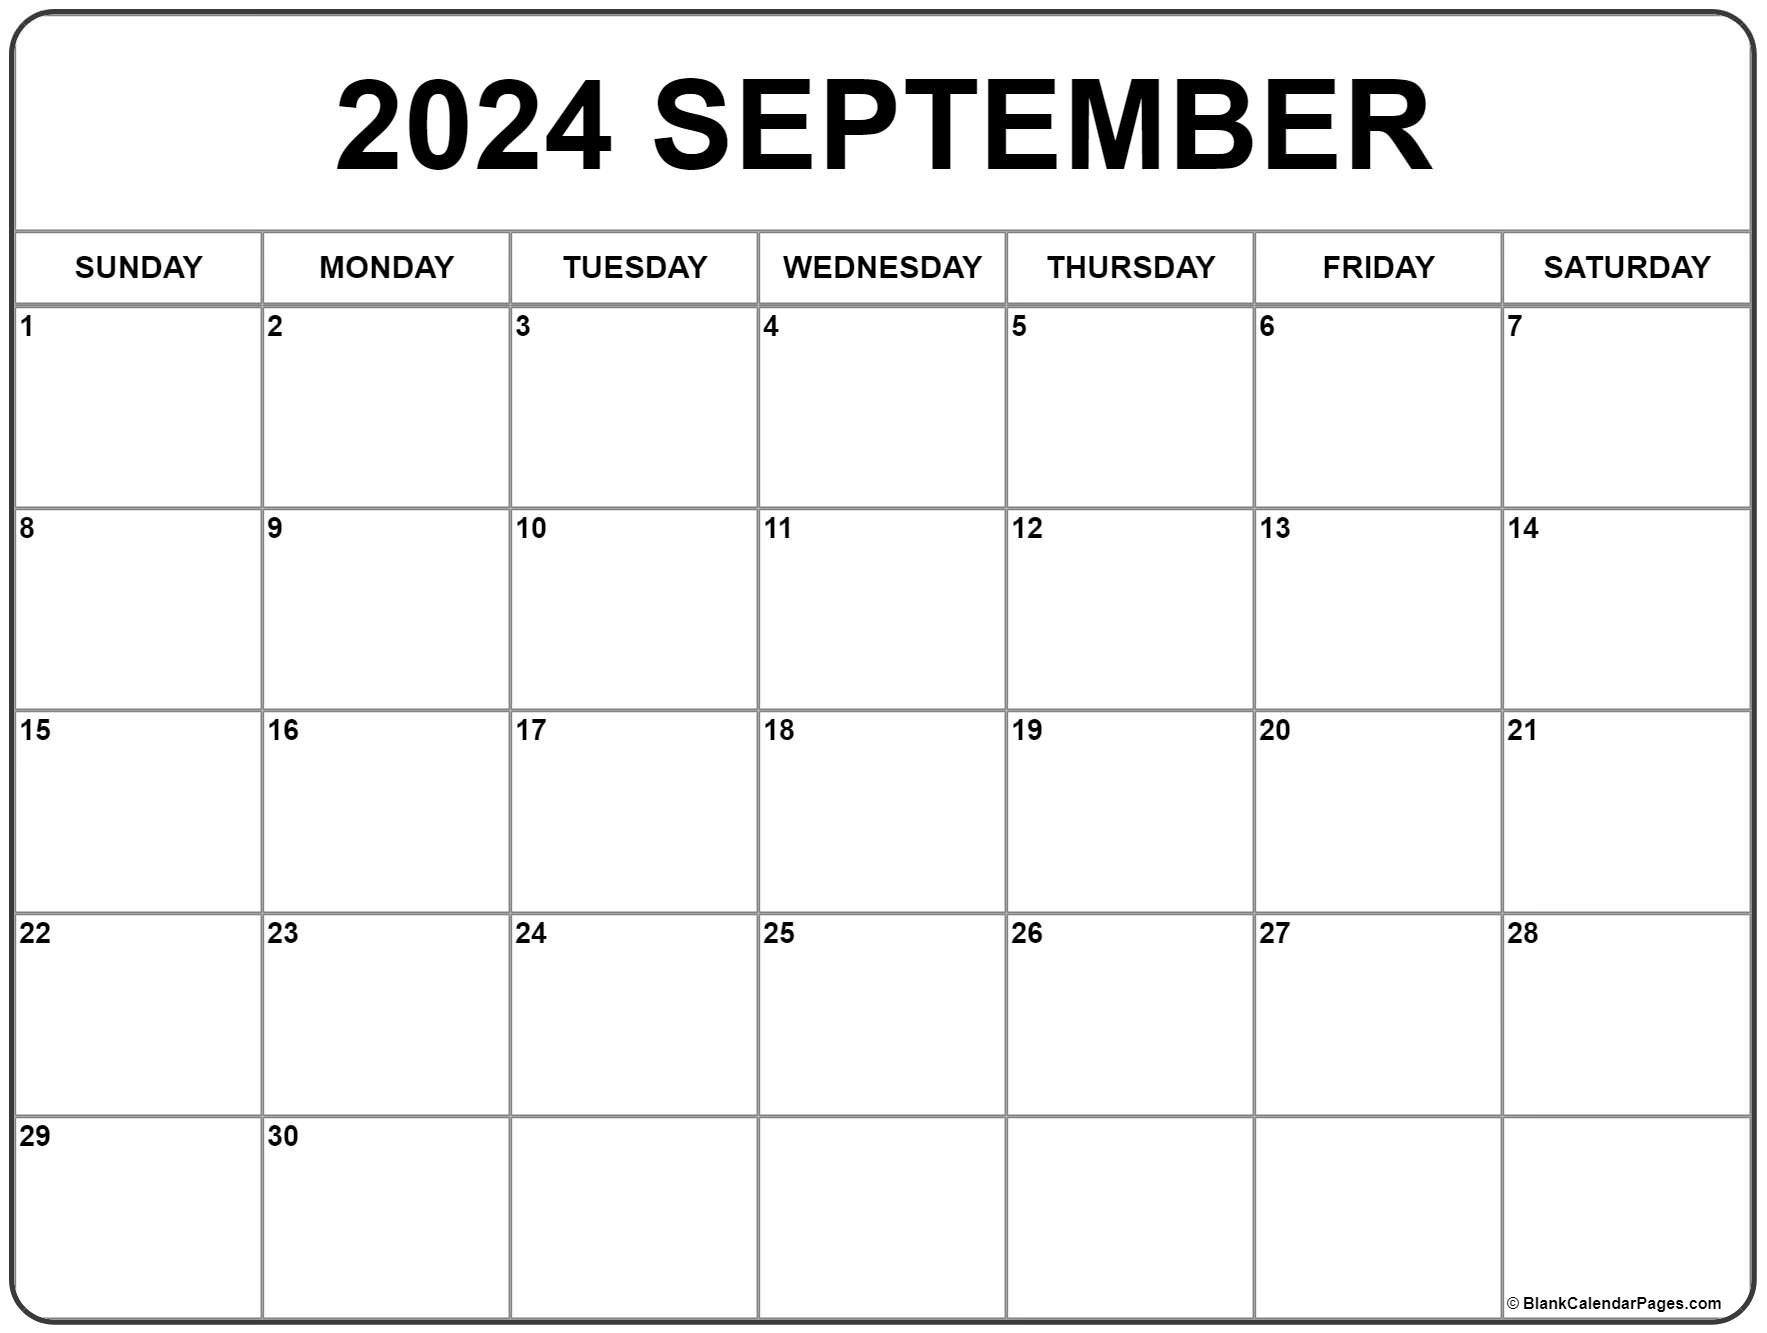 Pdf Calendar September 2024 Selia Cristina - Free Printable 2024 Monthly Calendar September